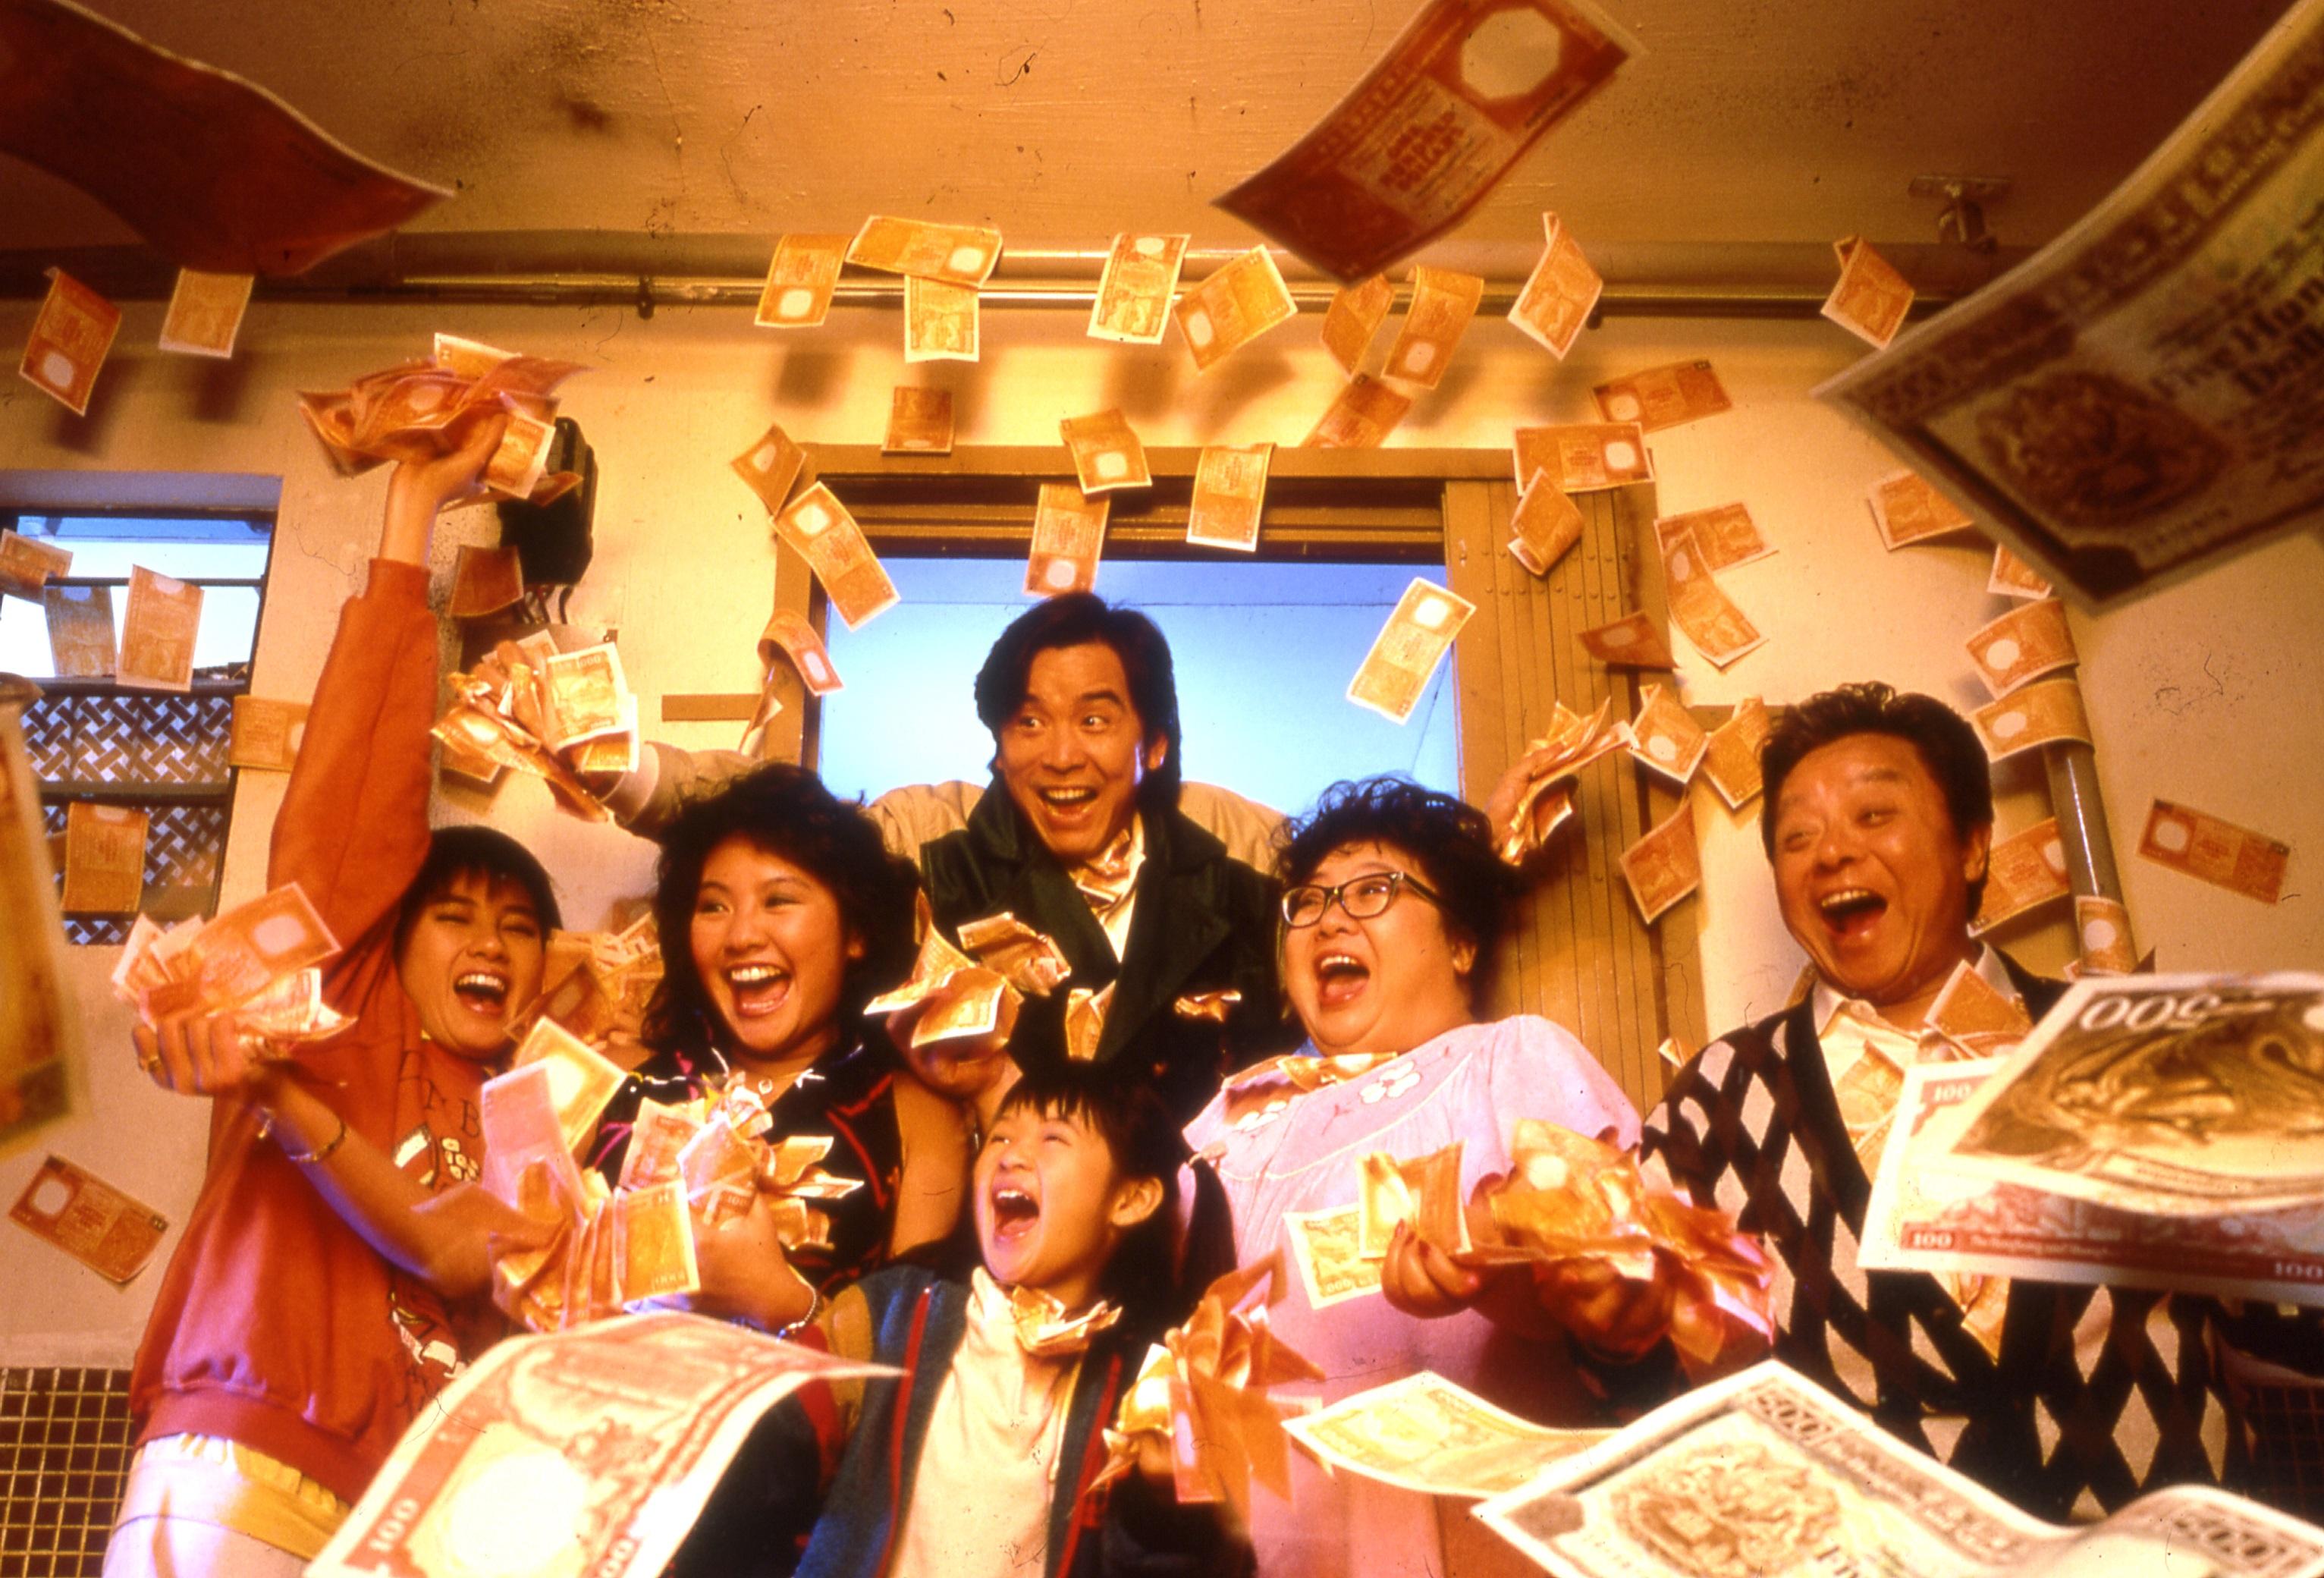 康樂及文化事務署香港電影資料館（資料館）精選三十部德寶電影公司的作品於七月三十日至十二月十八日在資料館電影院放映，讓觀衆重溫八、九十年代香港電影黃金時期的影片。圖示《富貴逼人》（1987）劇照。